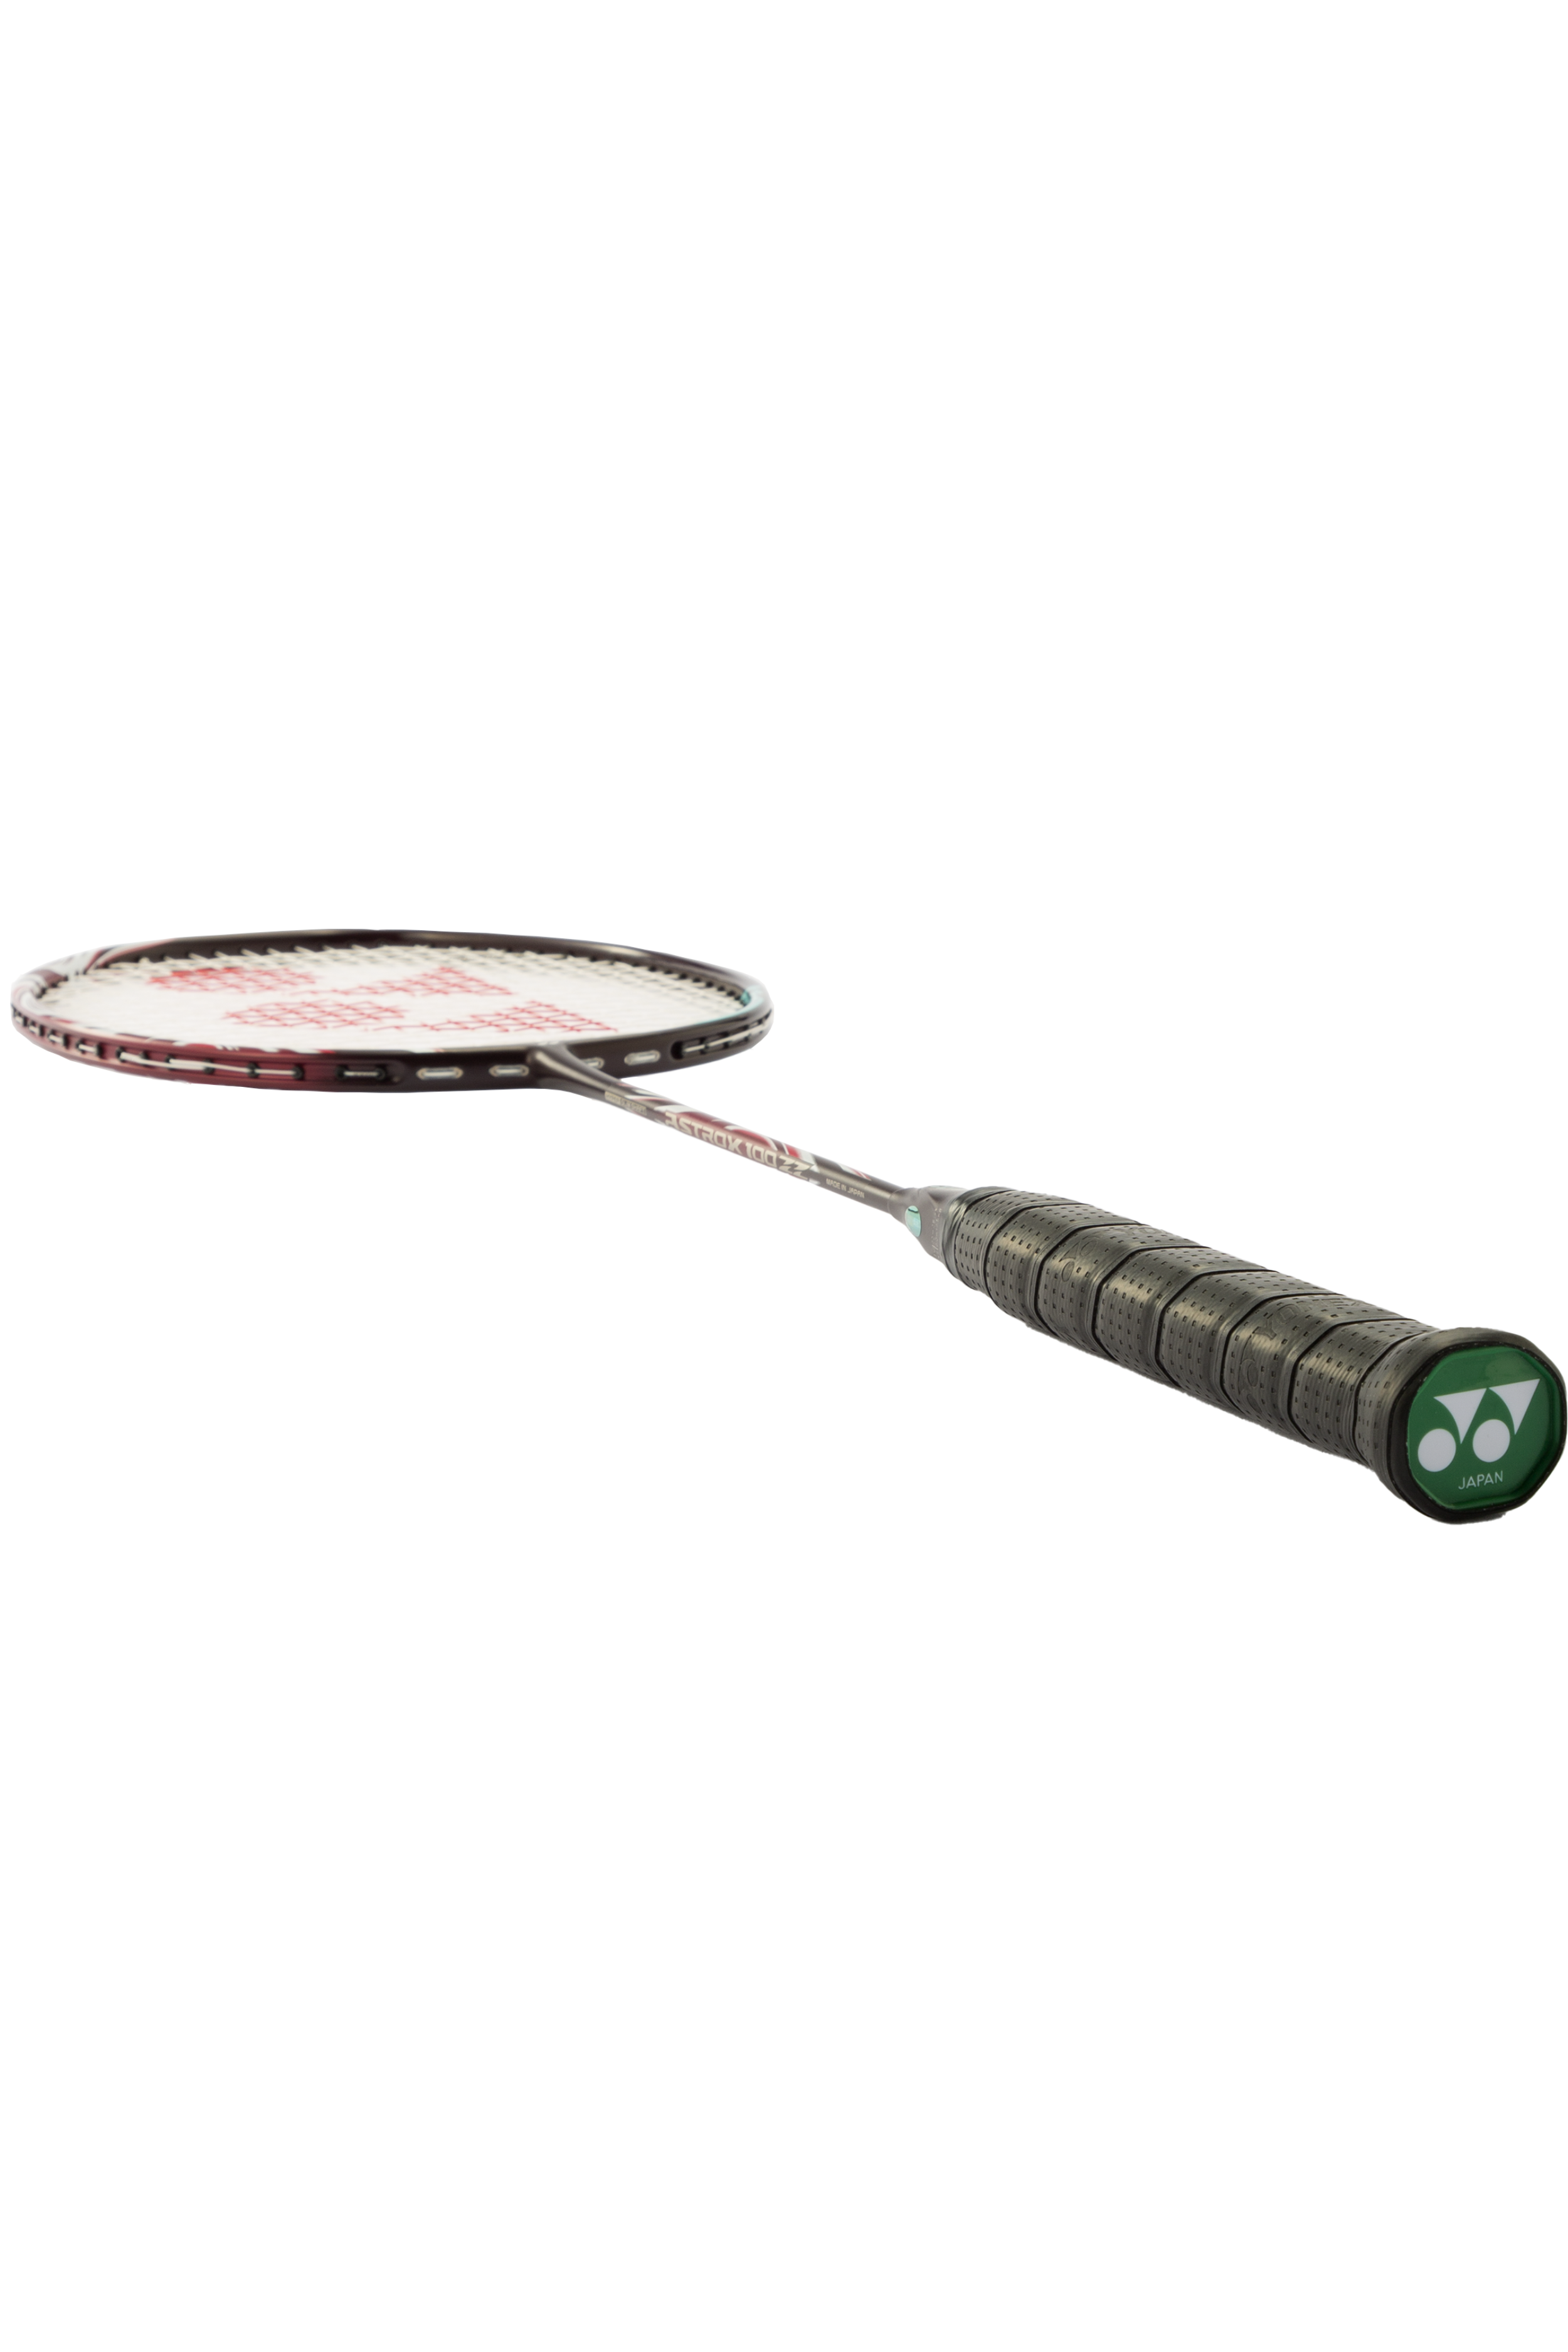 Yonex Astrox 100 ZZ Badminton Racket – Badminton Avenue